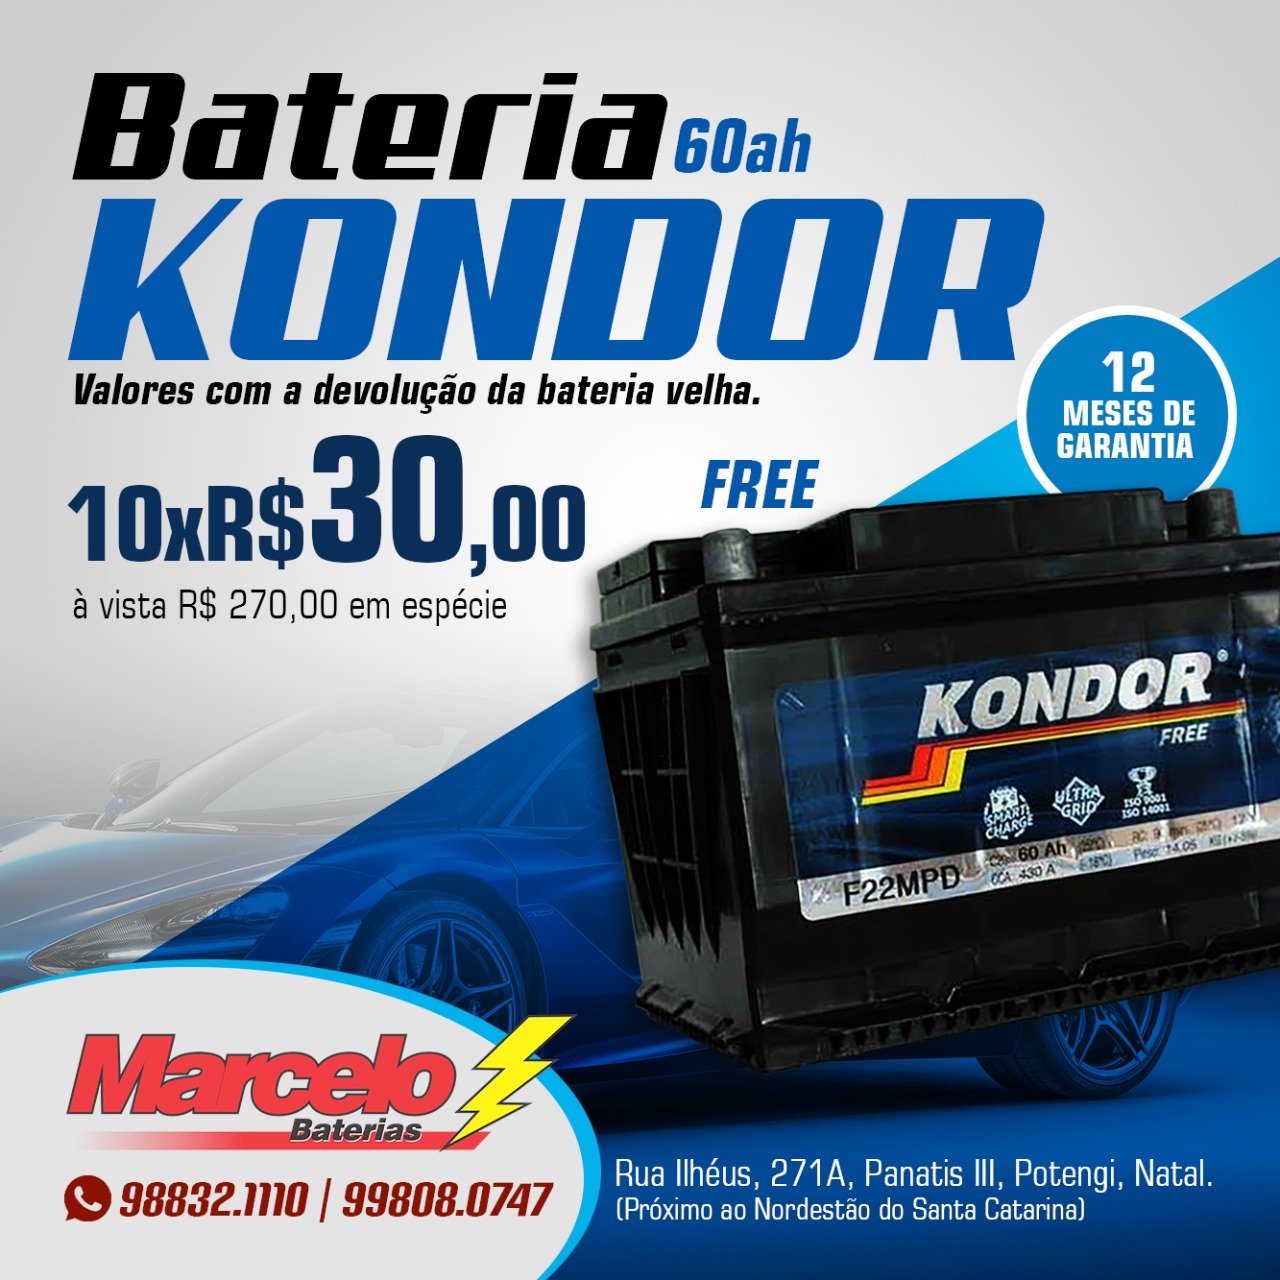 Promoção: Bateria Kondor Free 60 ah